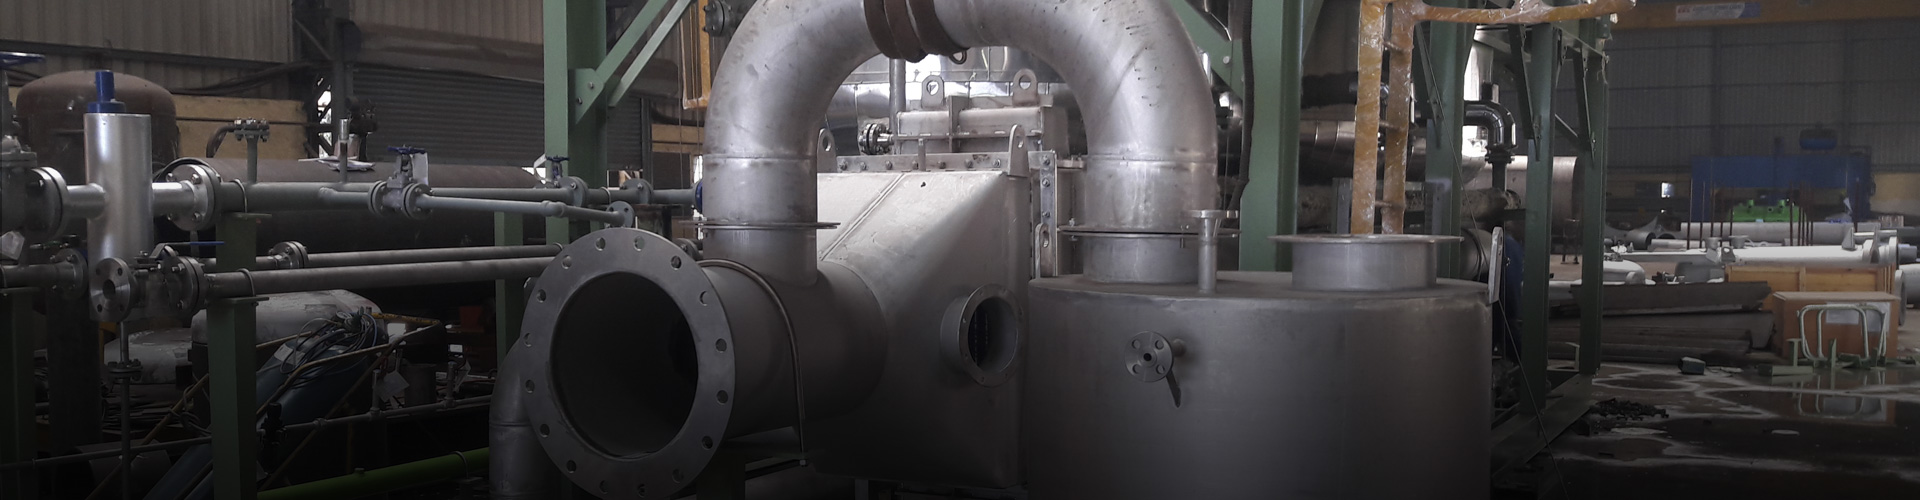 High Pressure boilers Exporter